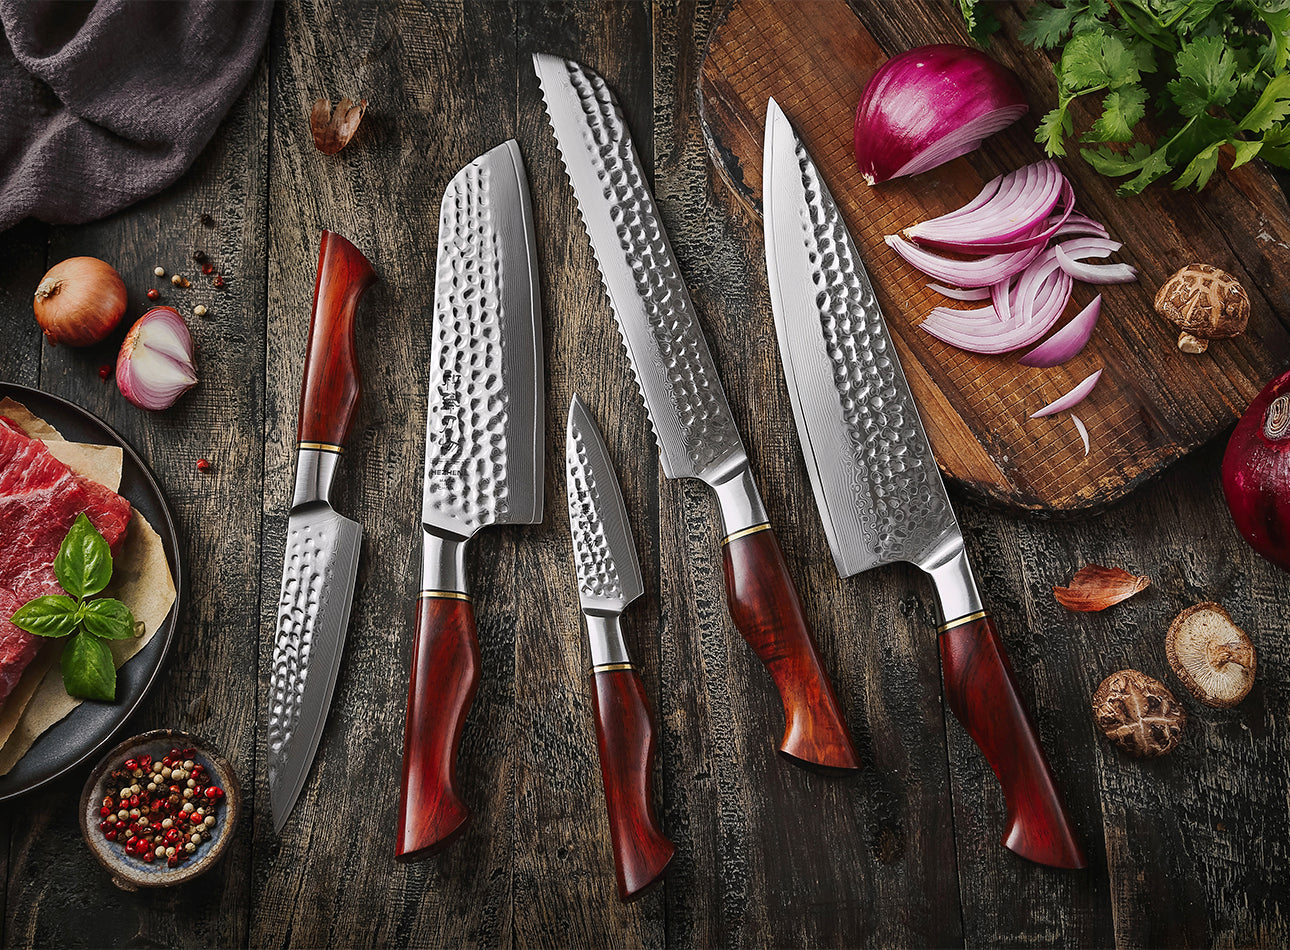 YARENH Professional Chef Knife Set - Kitchen Magnetic Knife Holder